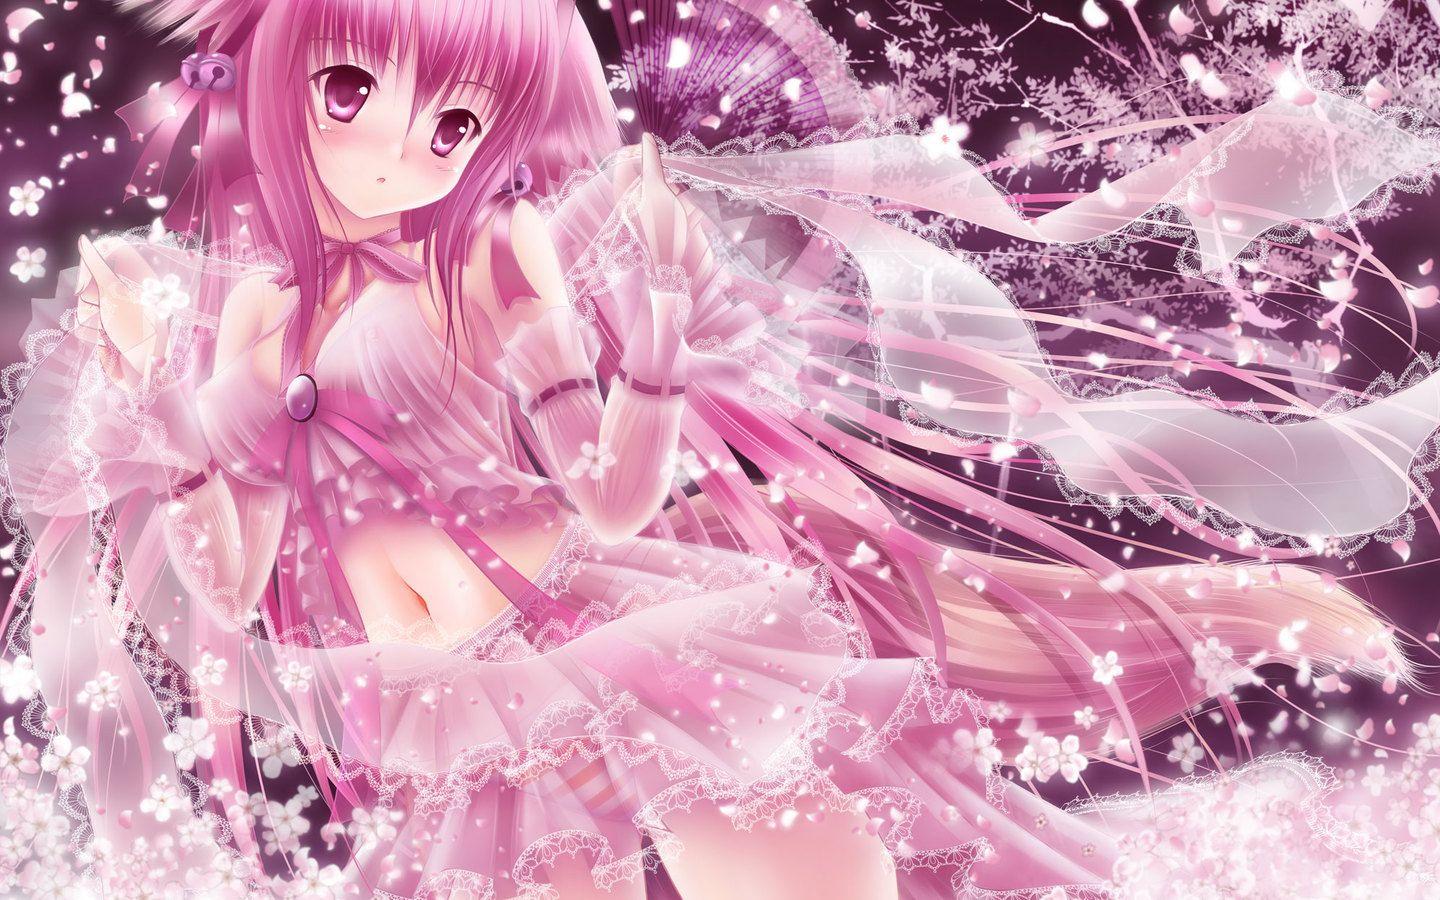 1440x900 Hình ảnh miễn phí Hình nền Anime Fairy Charming Quyến rũ 1440x900 90760